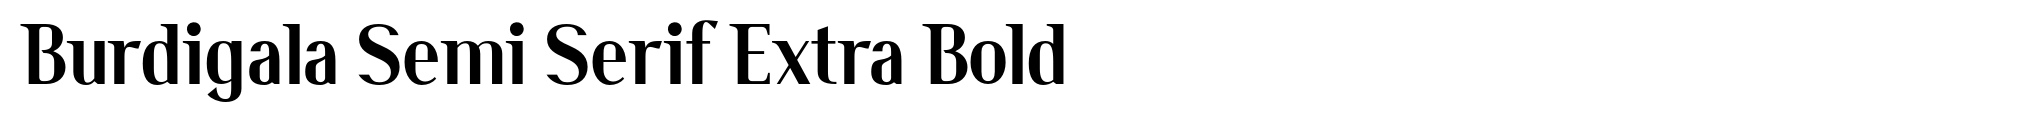 Burdigala Semi Serif Extra Bold image